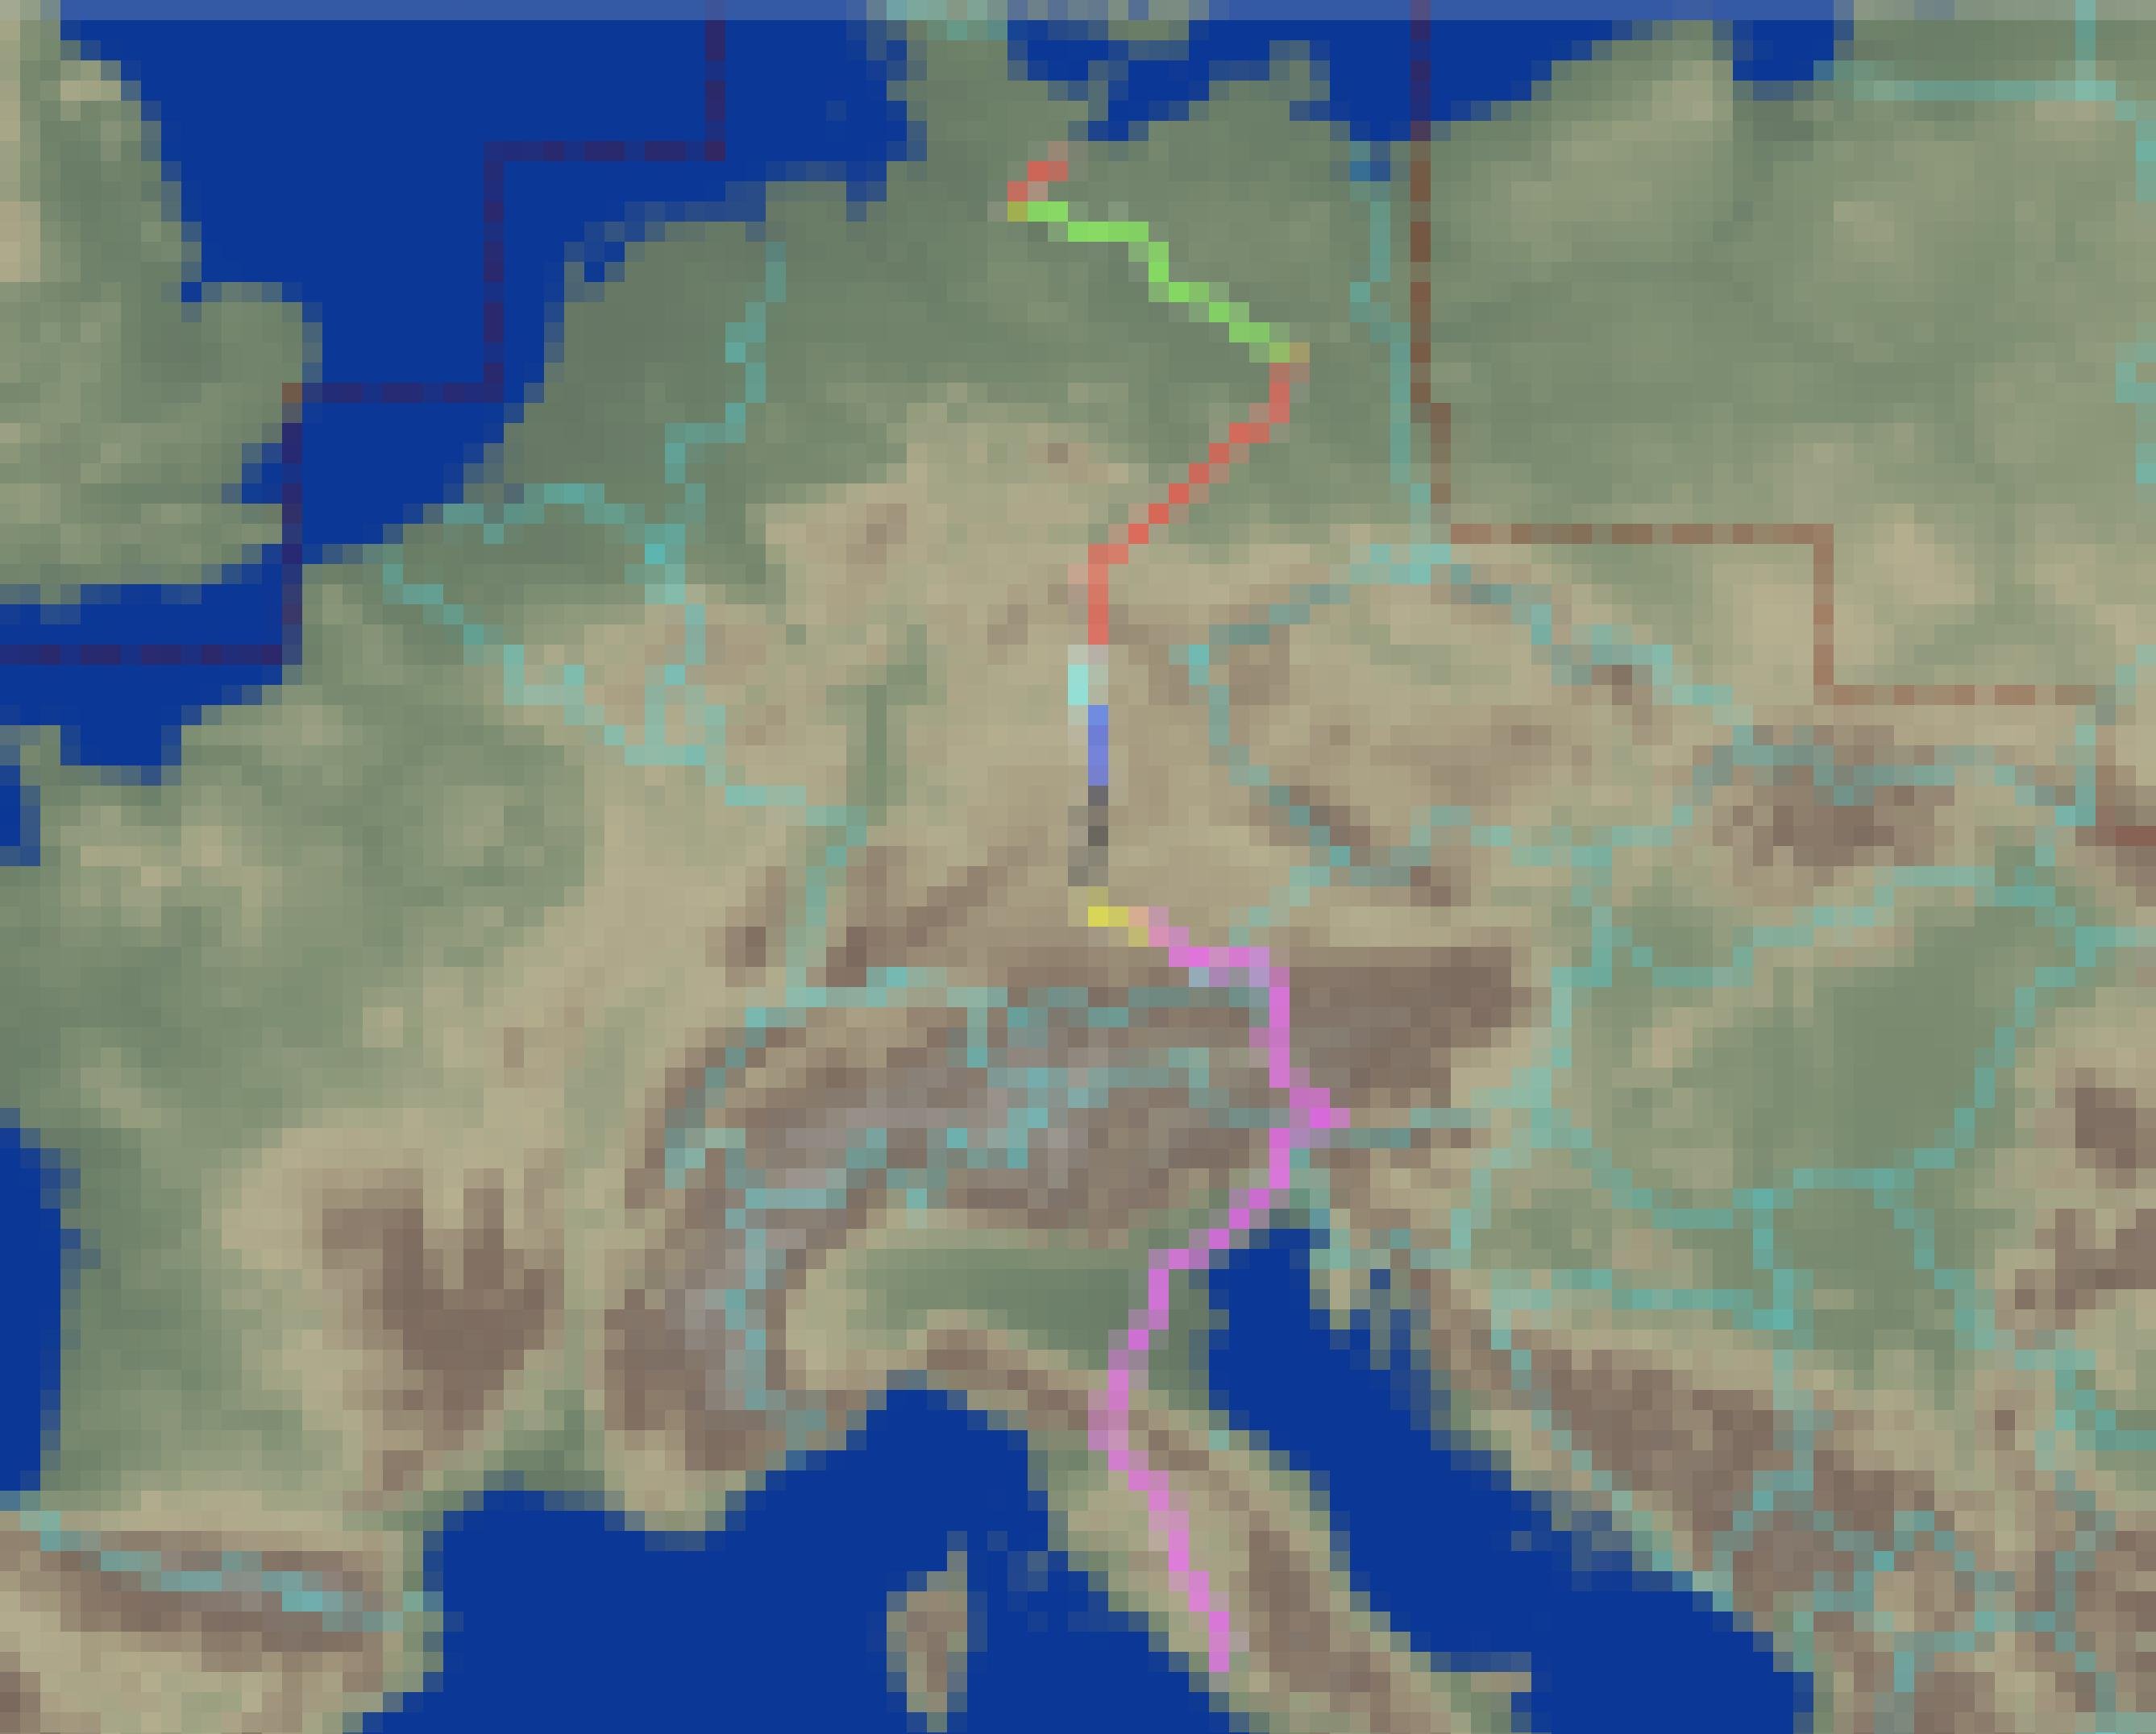 Kartenausschnitt mit Teilen Mittel- und Südeuropas, auf denen eine von Nord nach Süd laufende Route über die Alpen markiert ist